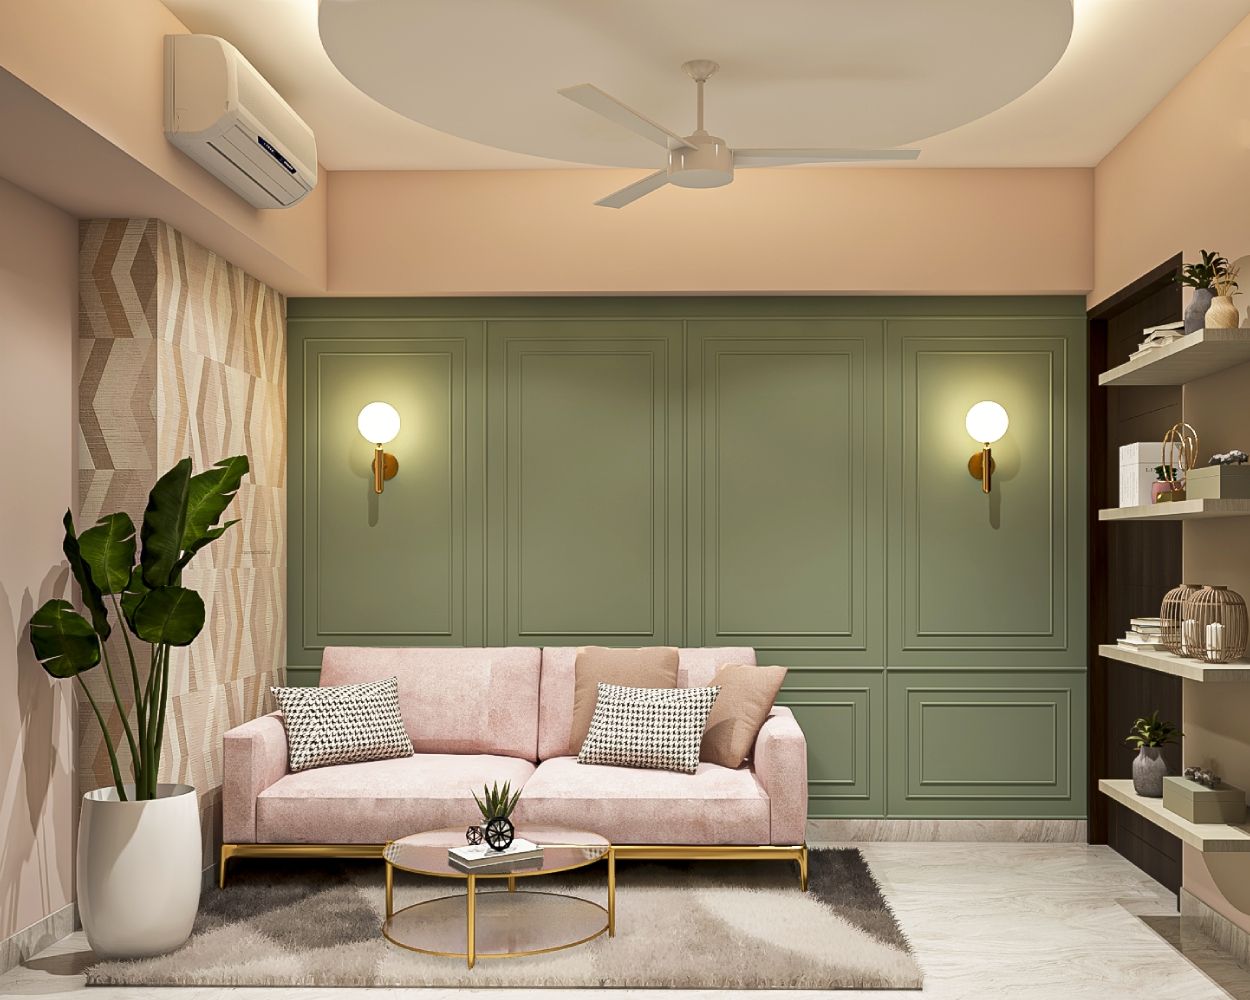 Tropical PVC False Ceiling Design With Circular Shape For Living Room